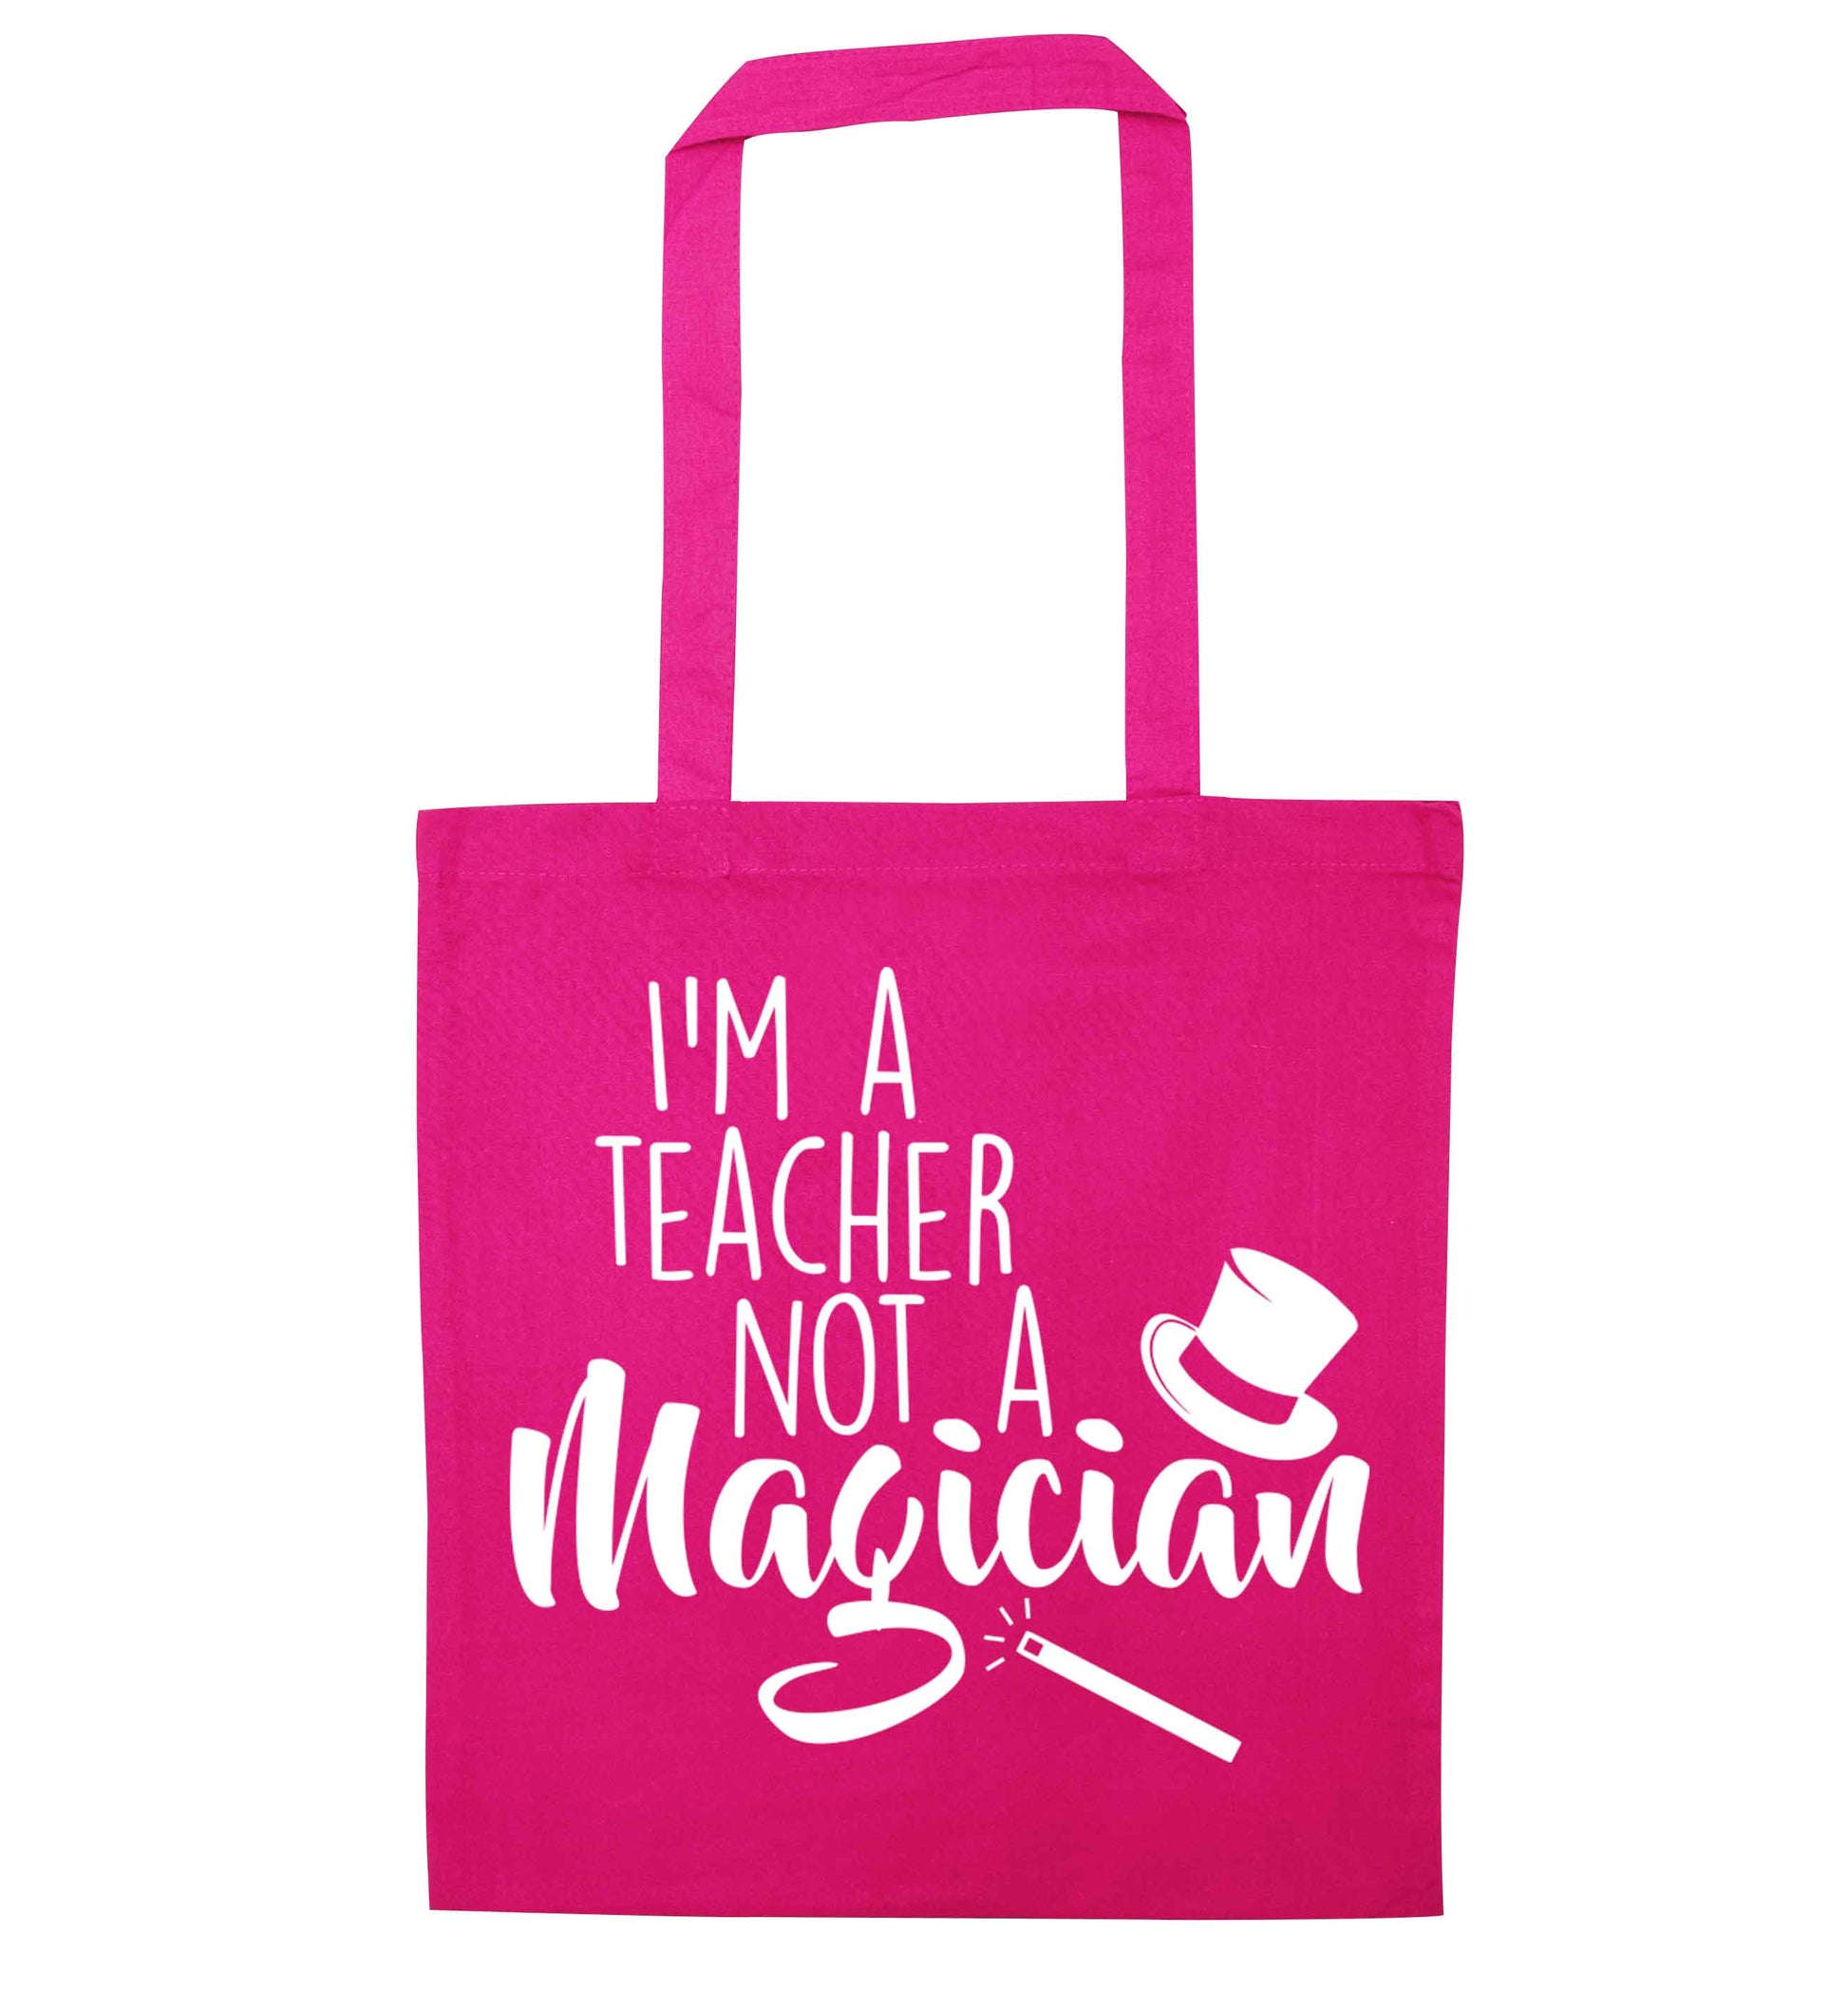 I'm a teacher not a magician pink tote bag